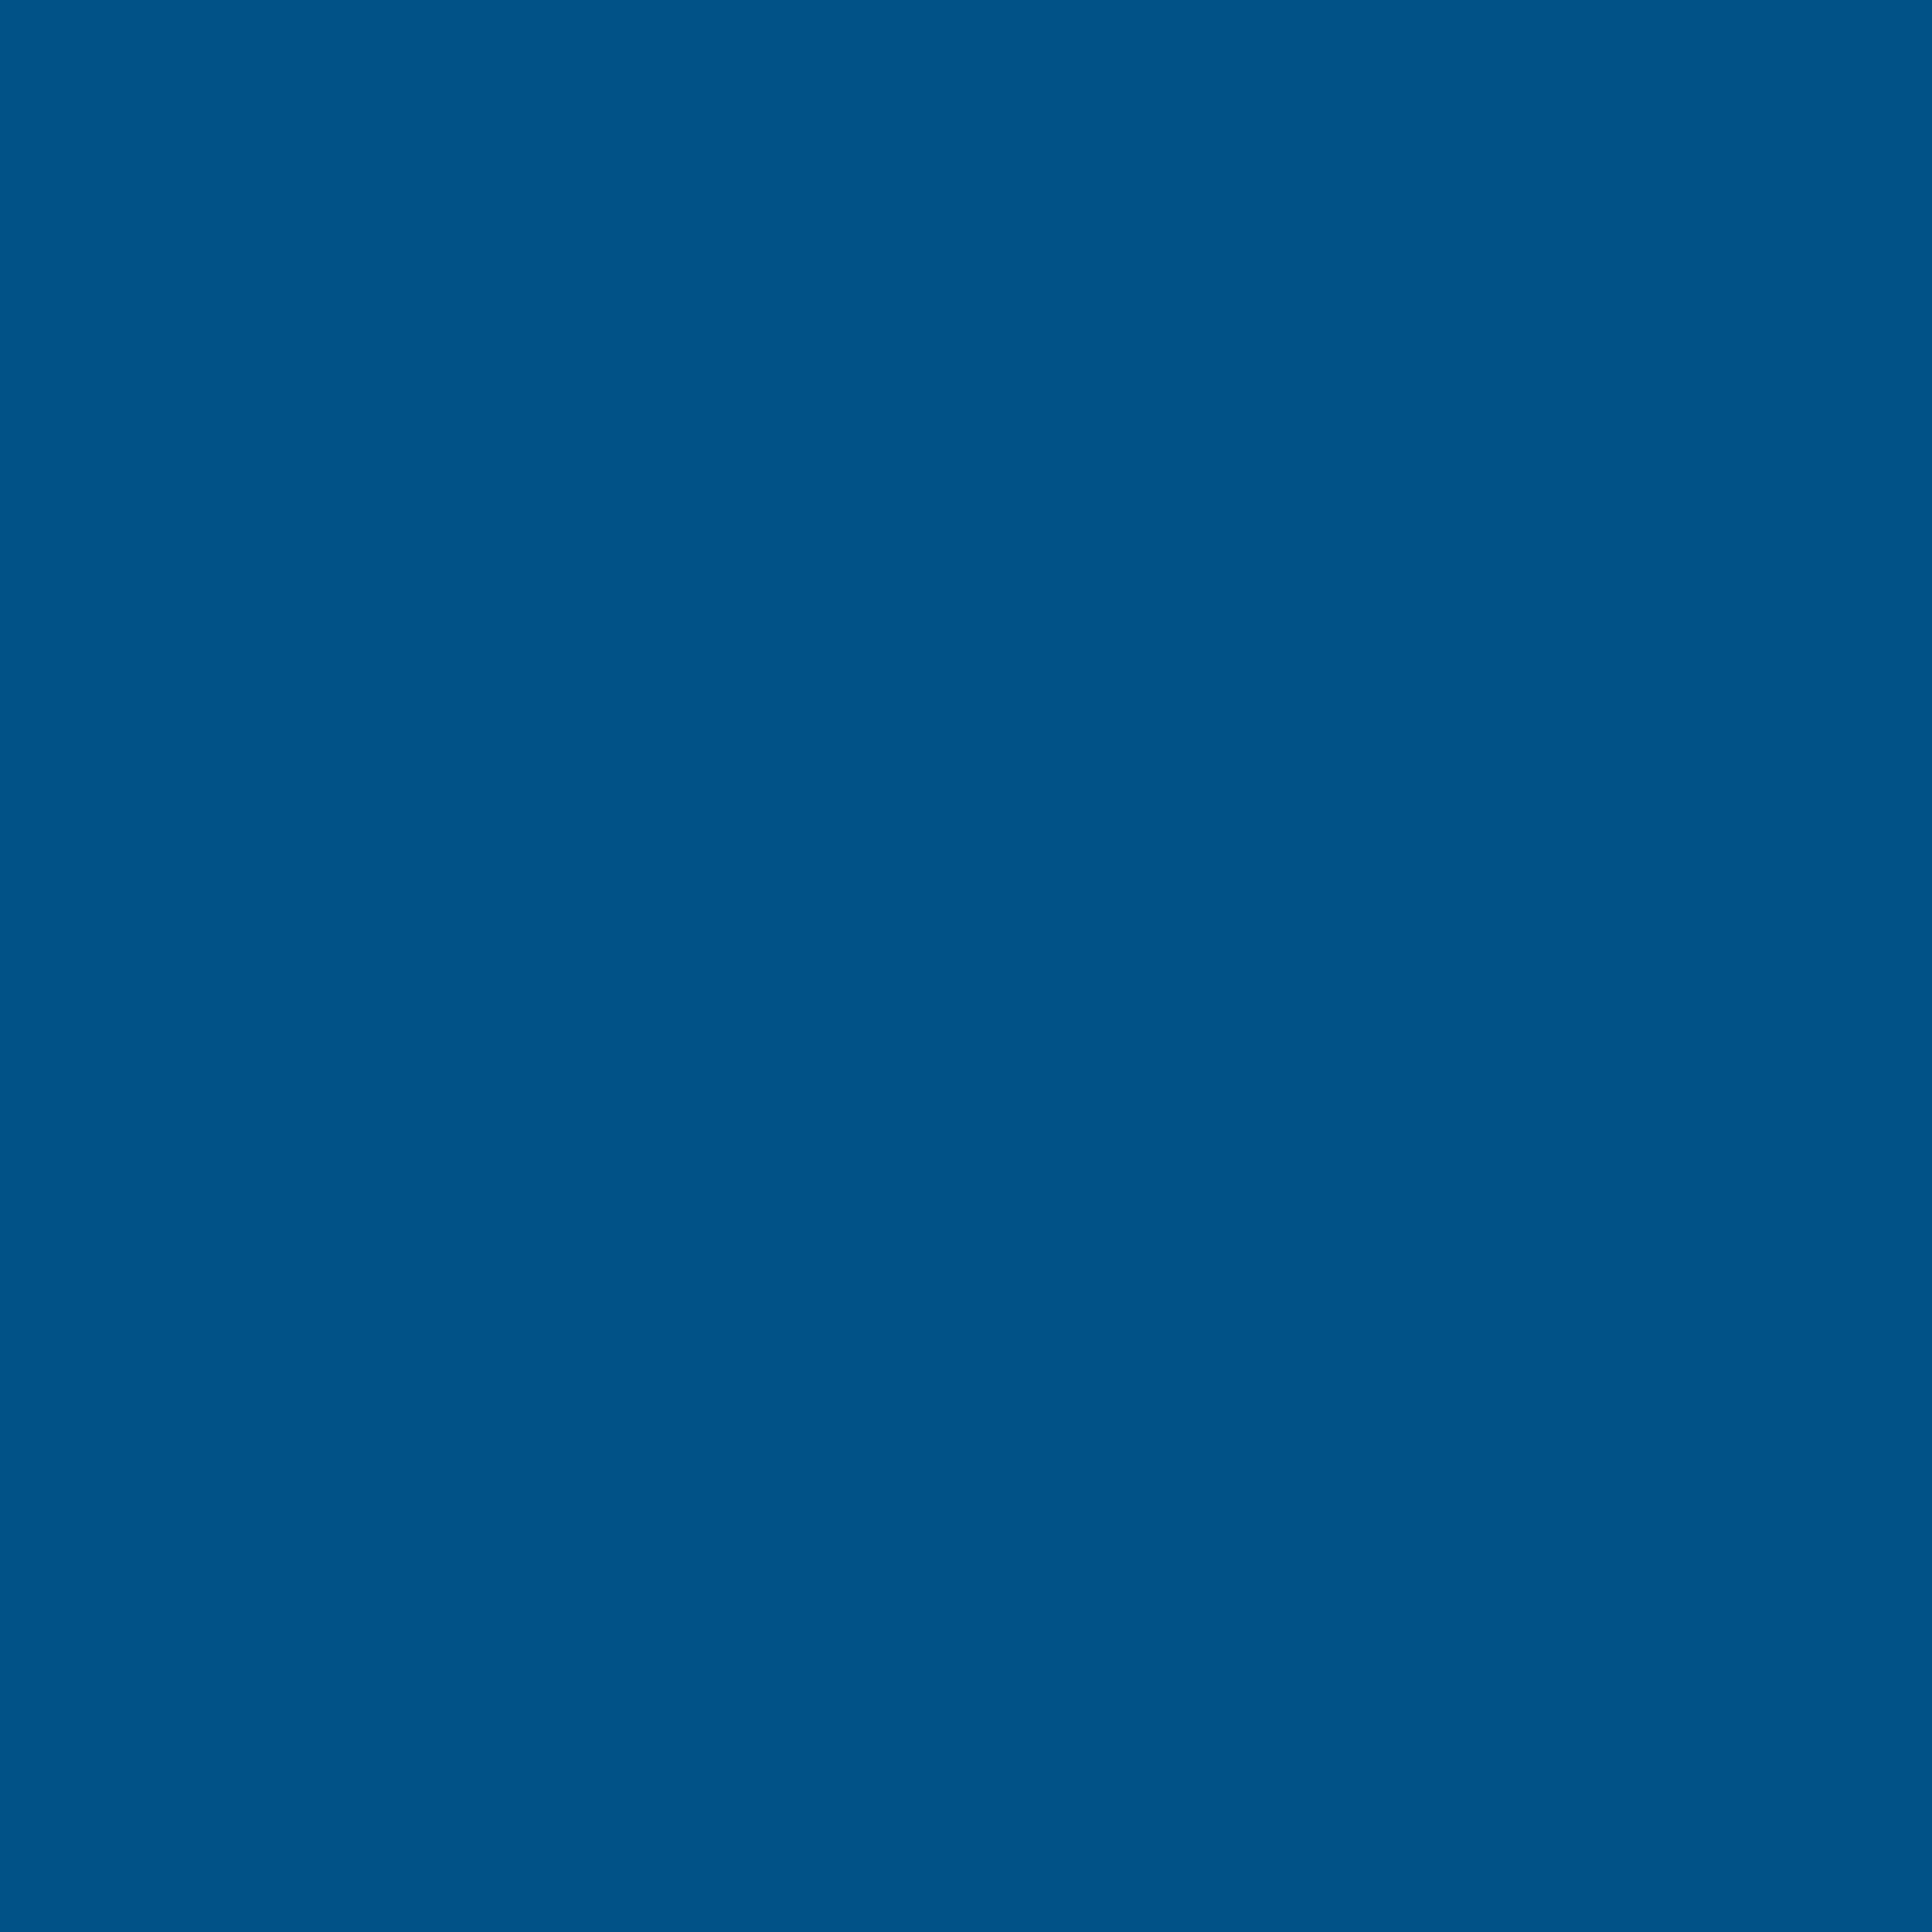 Эмаль аэрозольная для металлочерепицы и водостоков Luxens глянцевая цвет синий 520 мл - фотография № 4